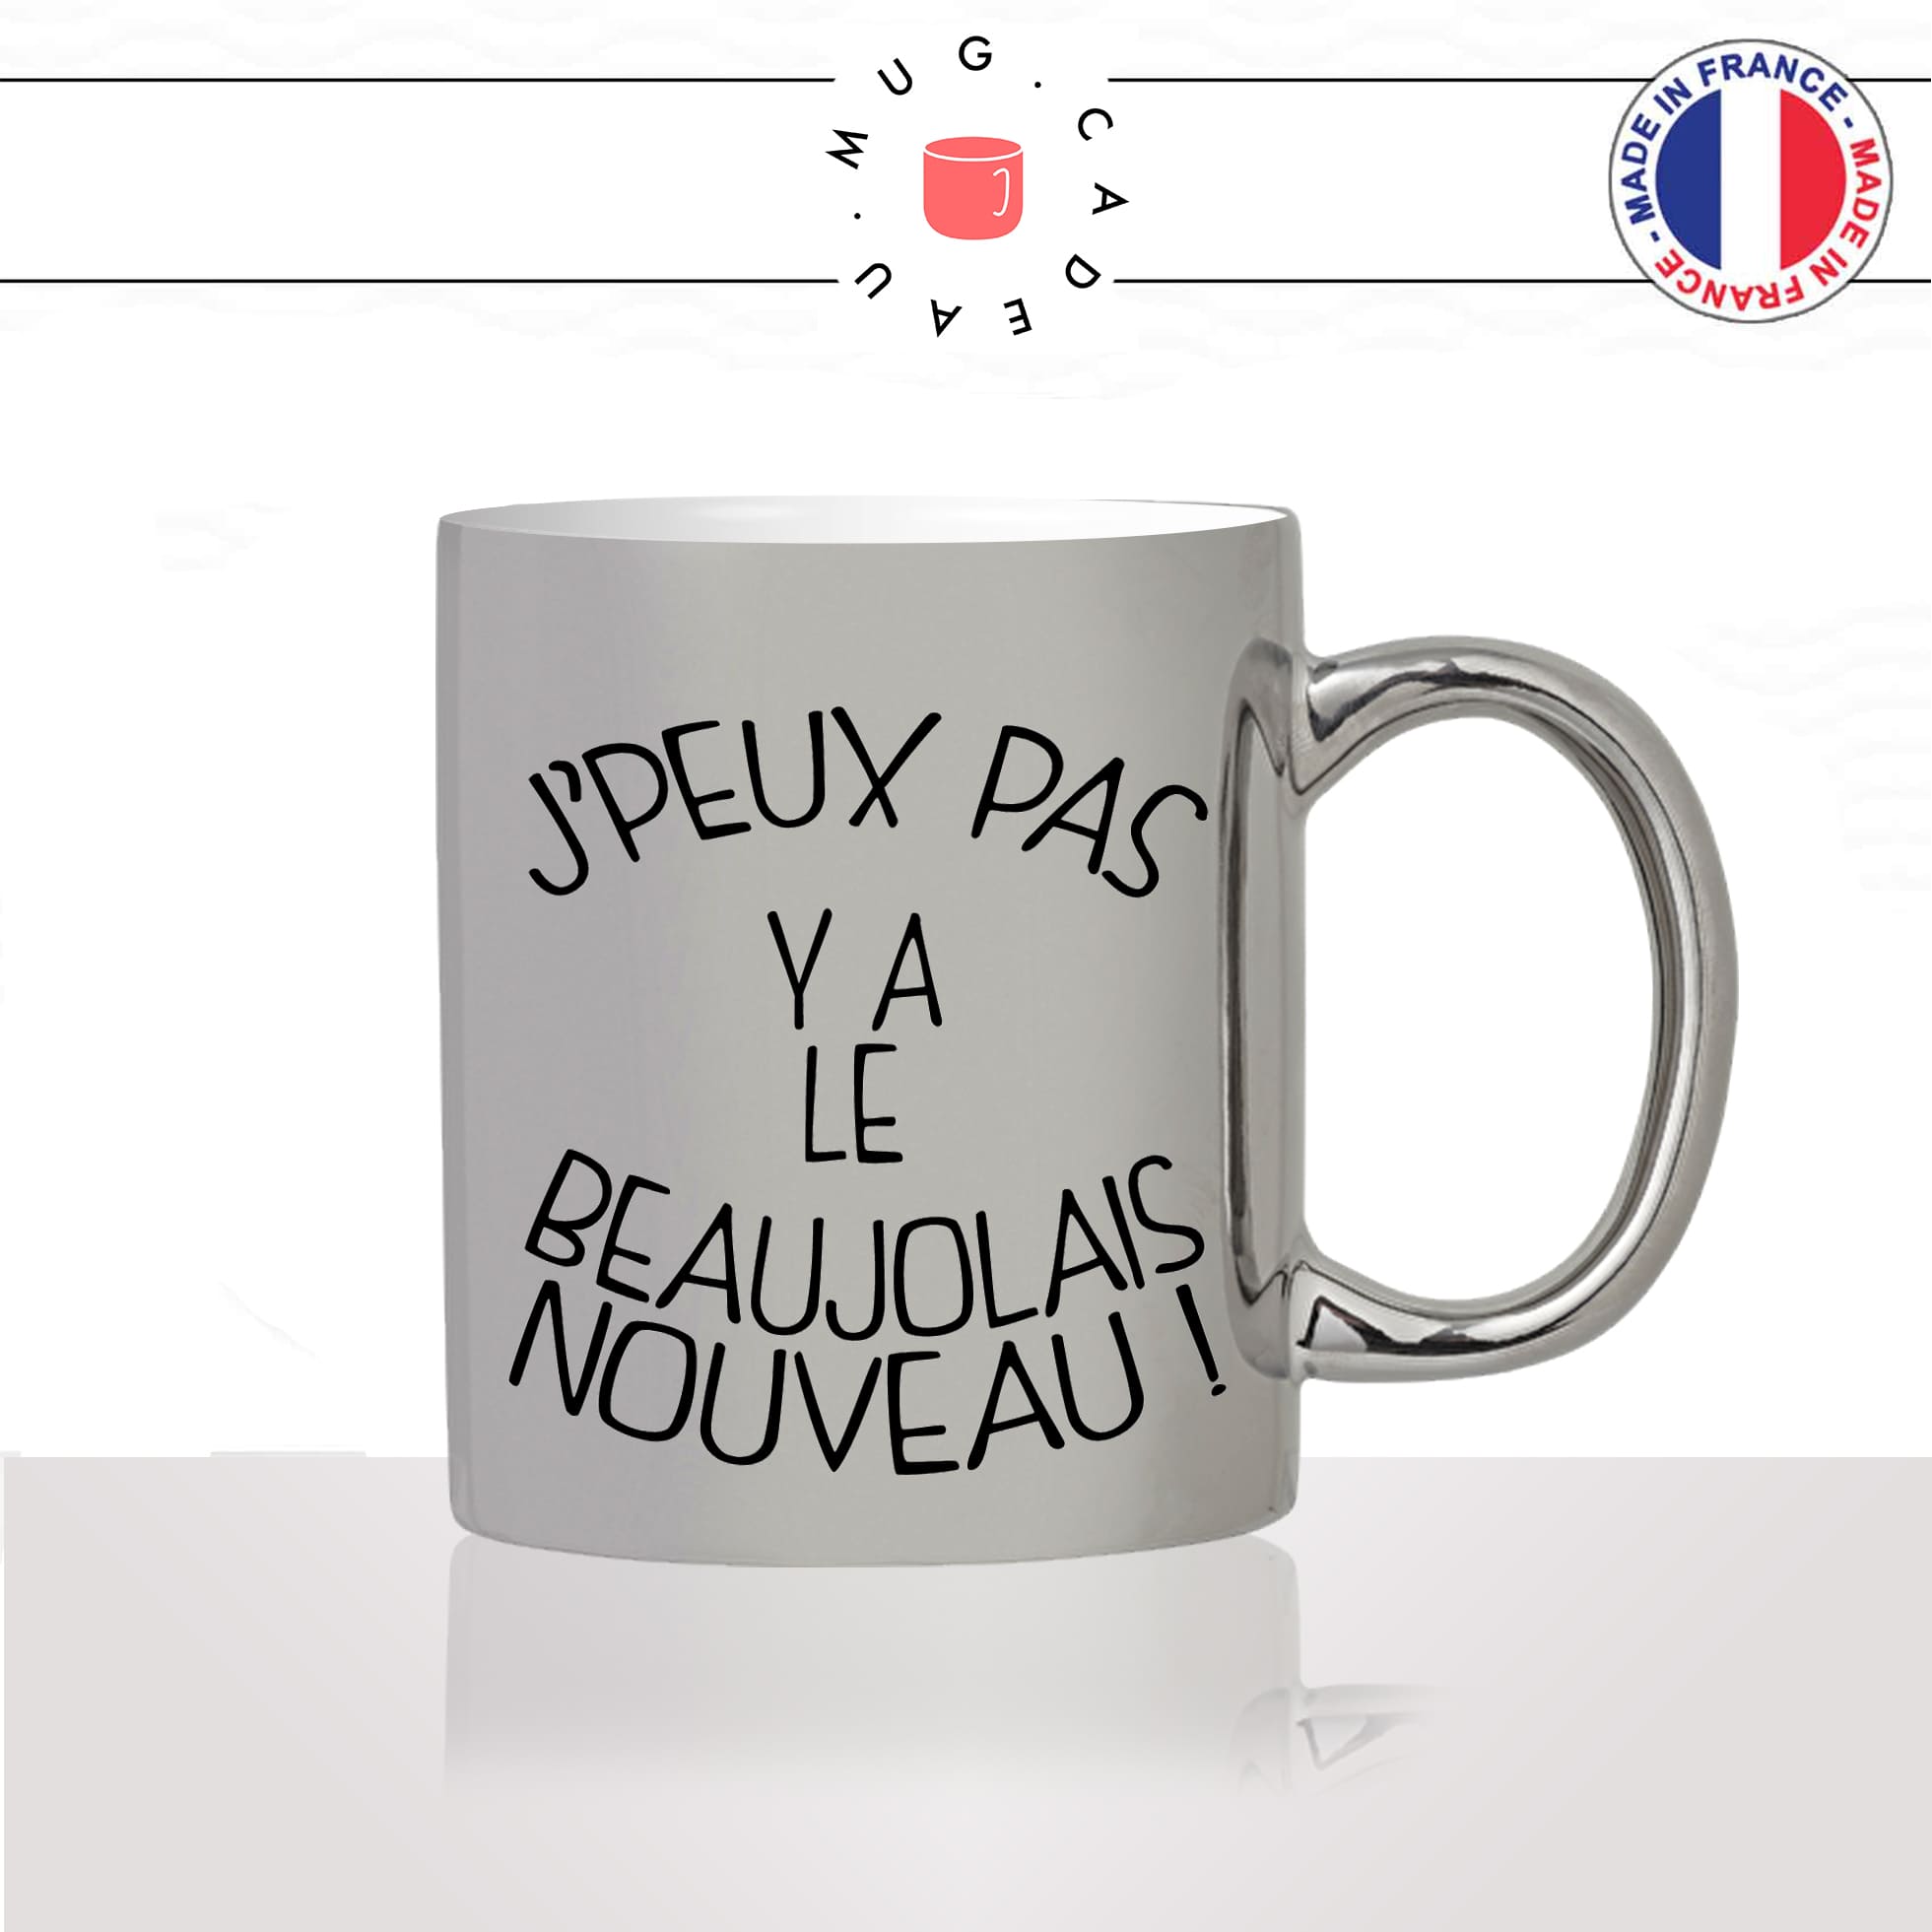 mug-argenté-gris-tasse-idée-cadeau-personnalisé-jpeux-pas-y-a-le-beaujolais-nouveau-vin-rouge-apéro-aperitif-copains-humour-offrir-original-2